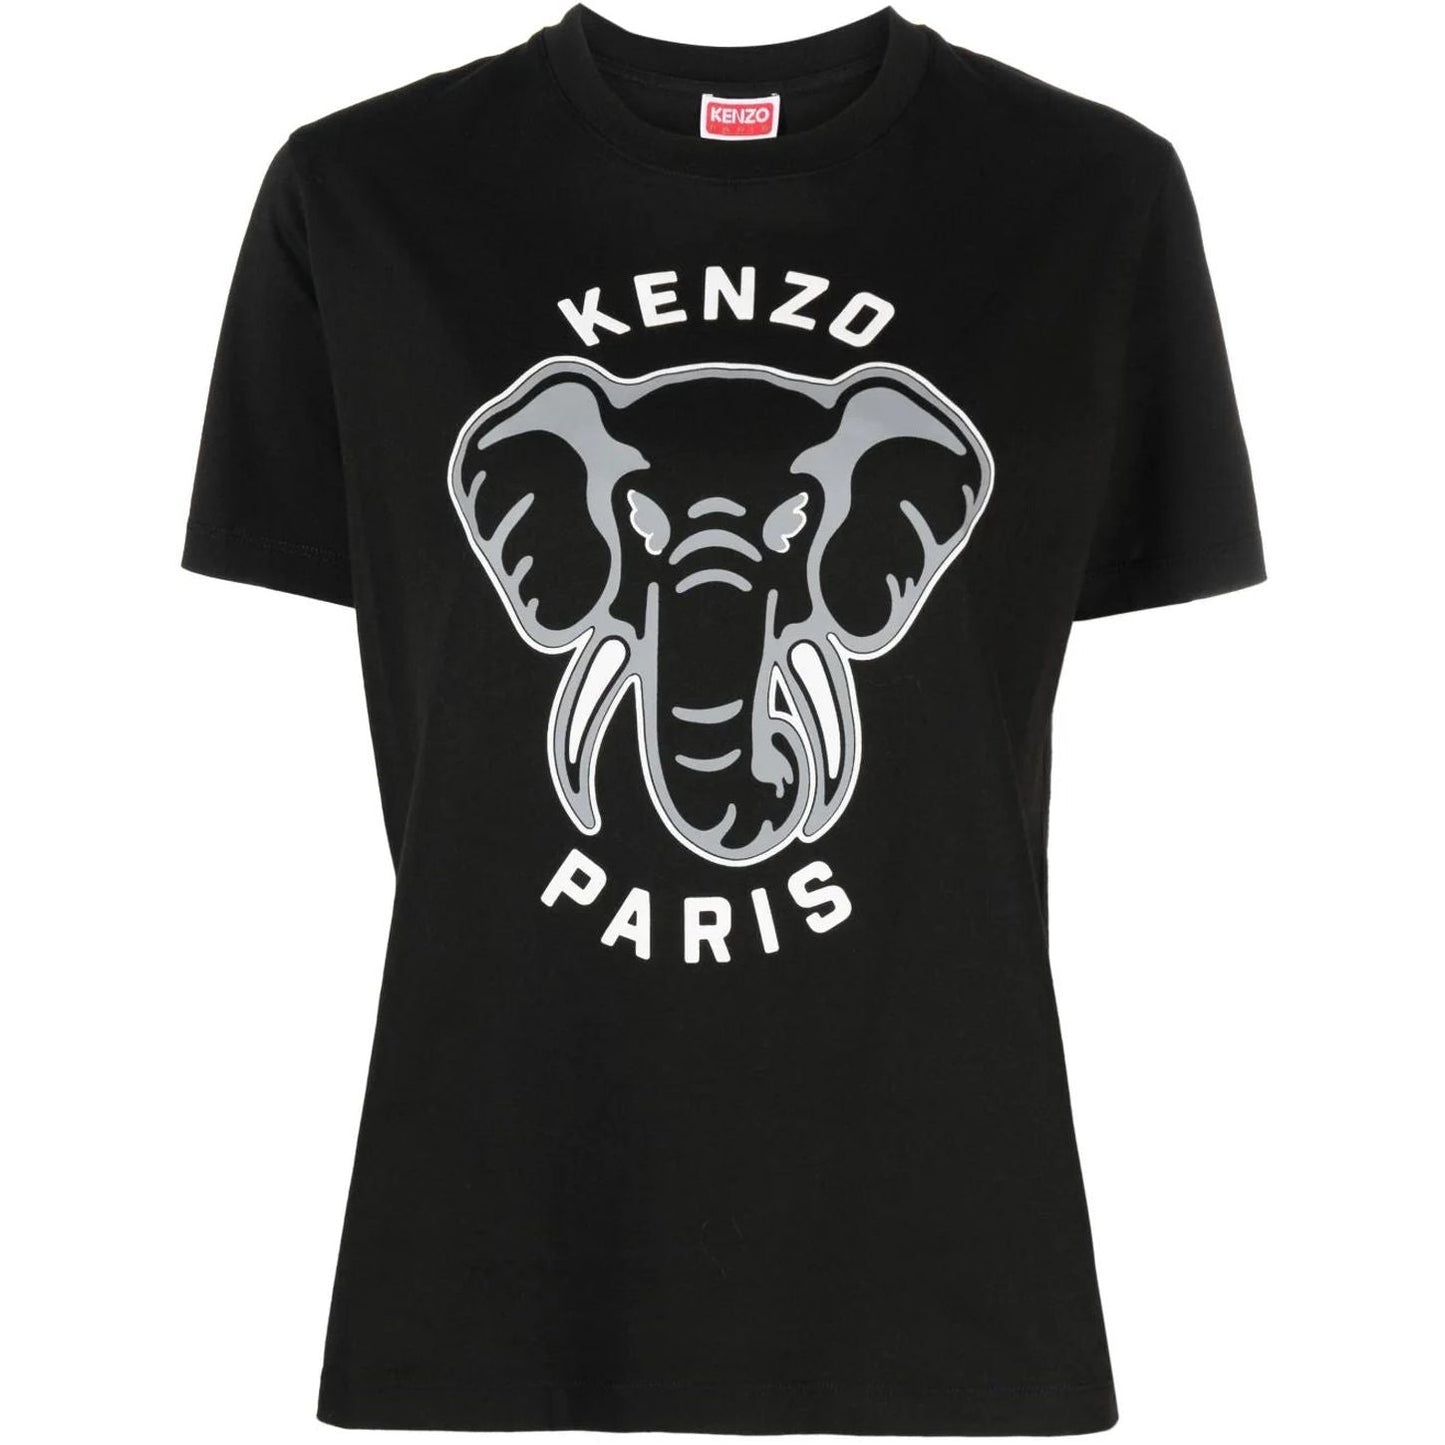 KENZO moteriški juodi marškinėliai trumpomis rankovėmis Ken zo loose fit t-shirt